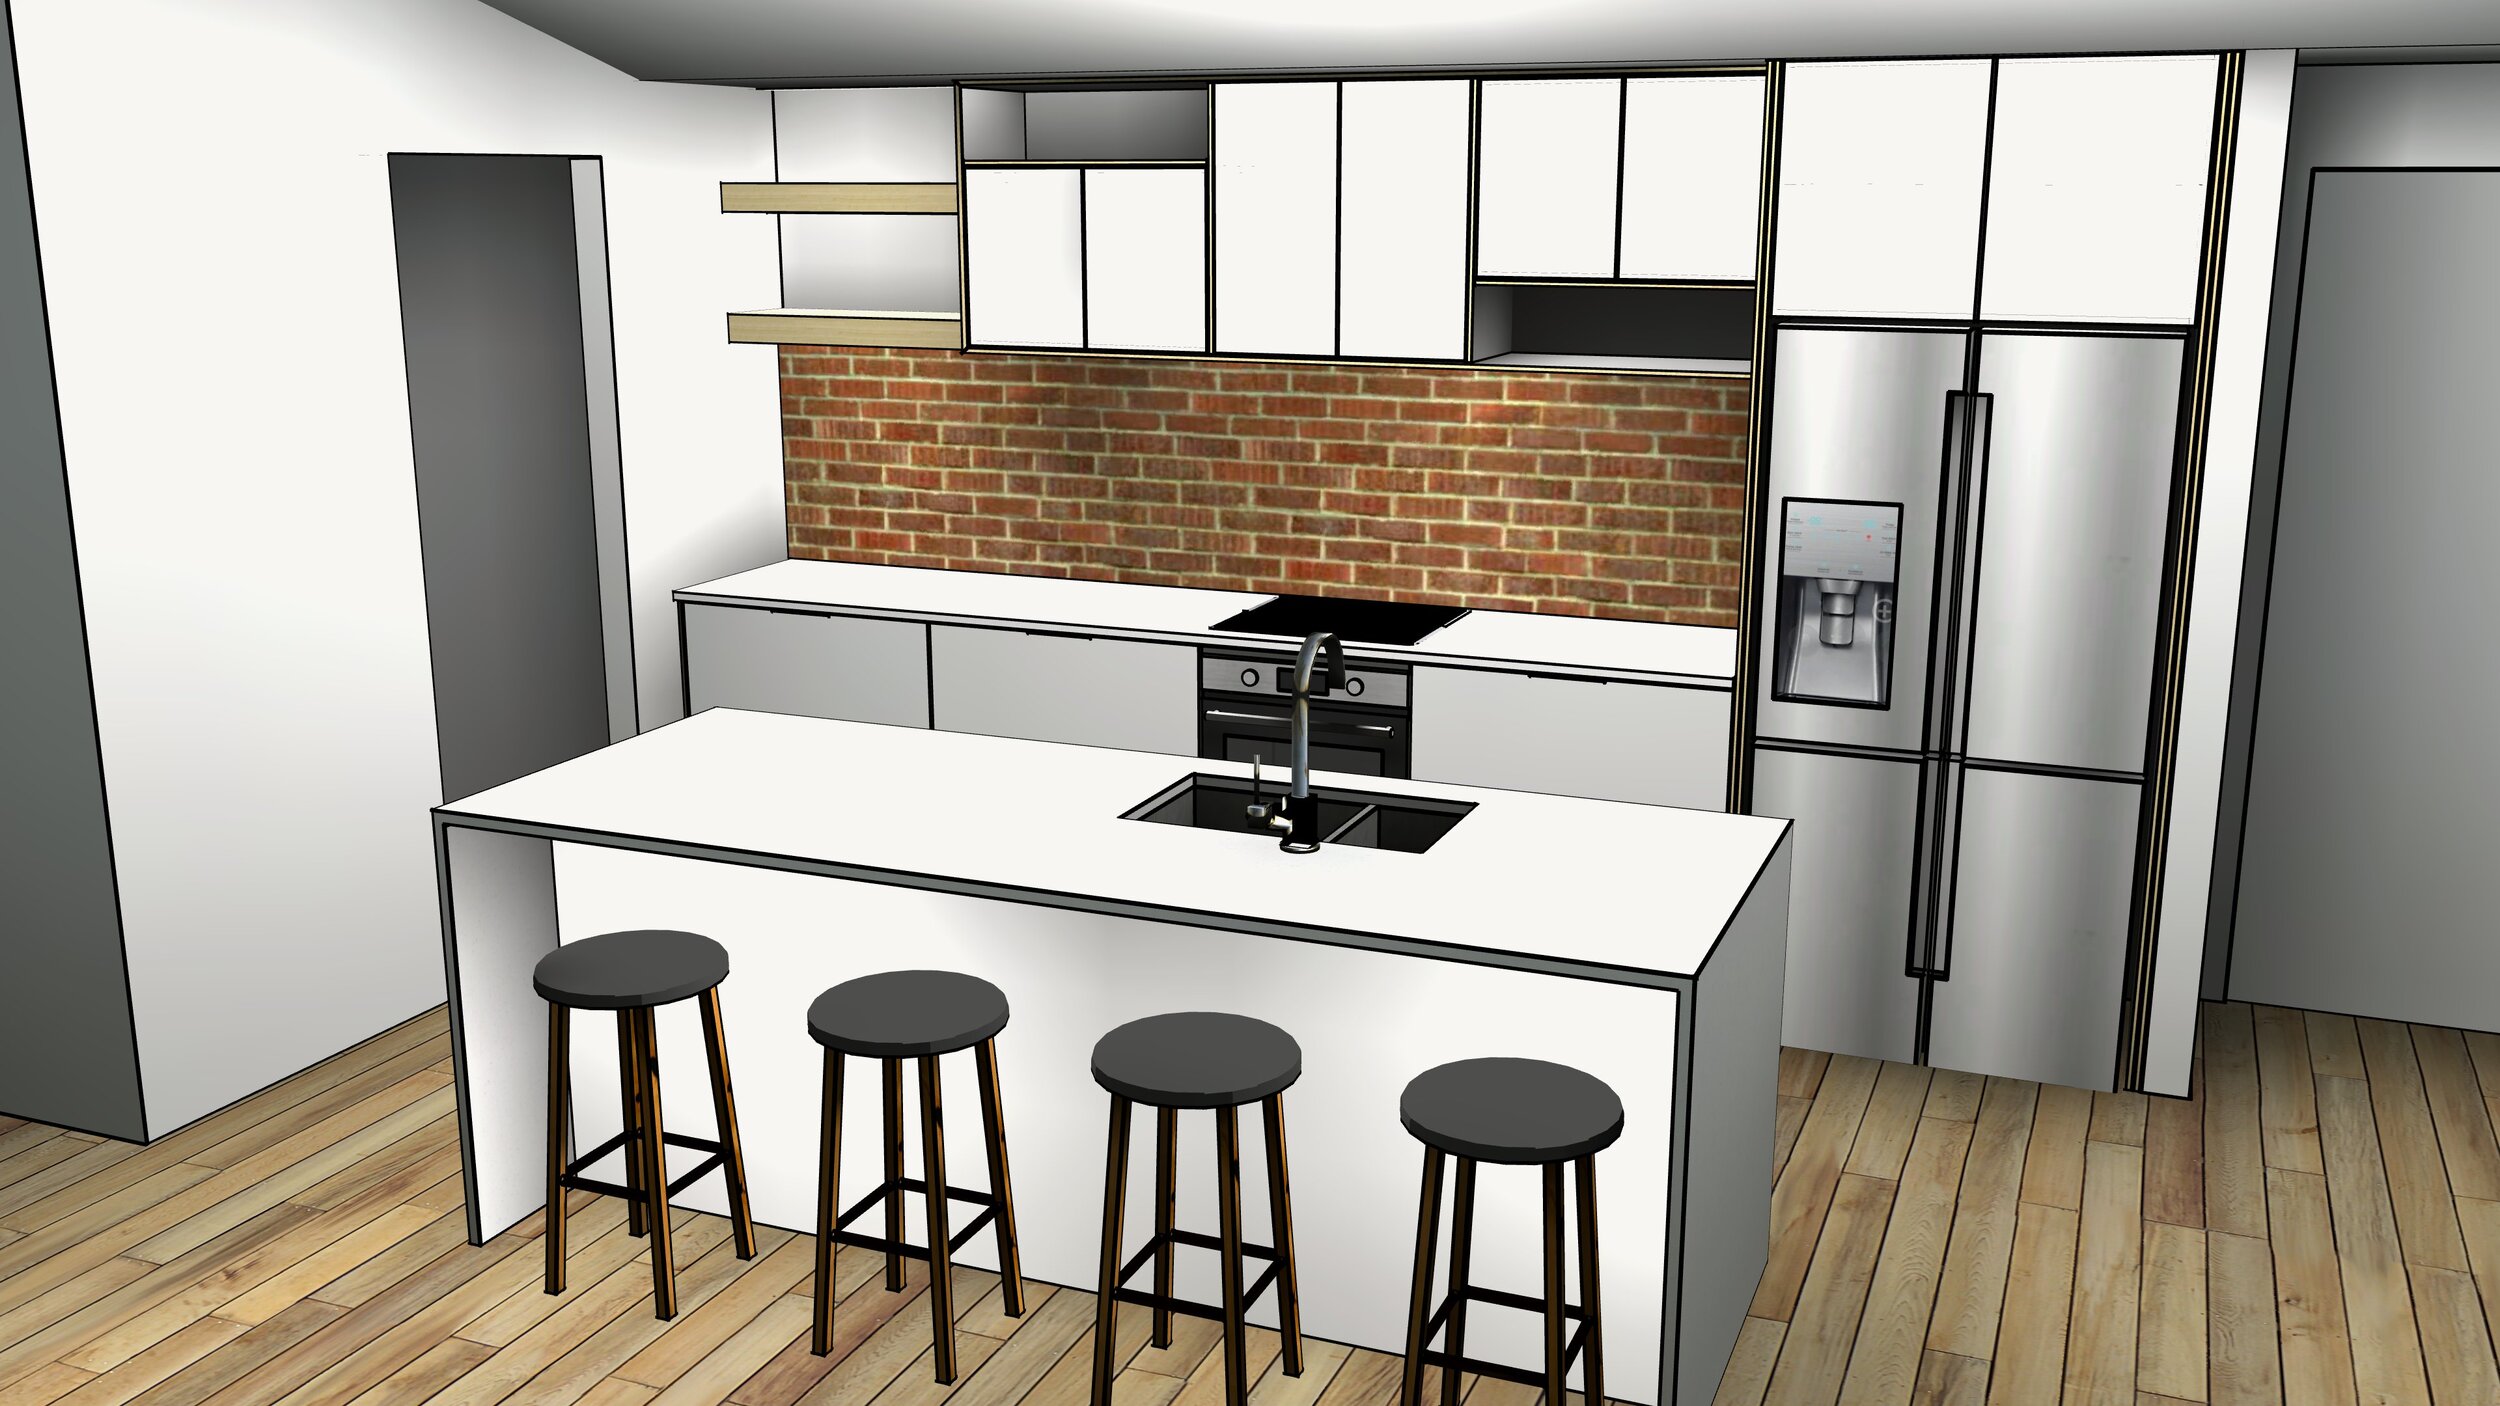 main kitchen render 3.jpg